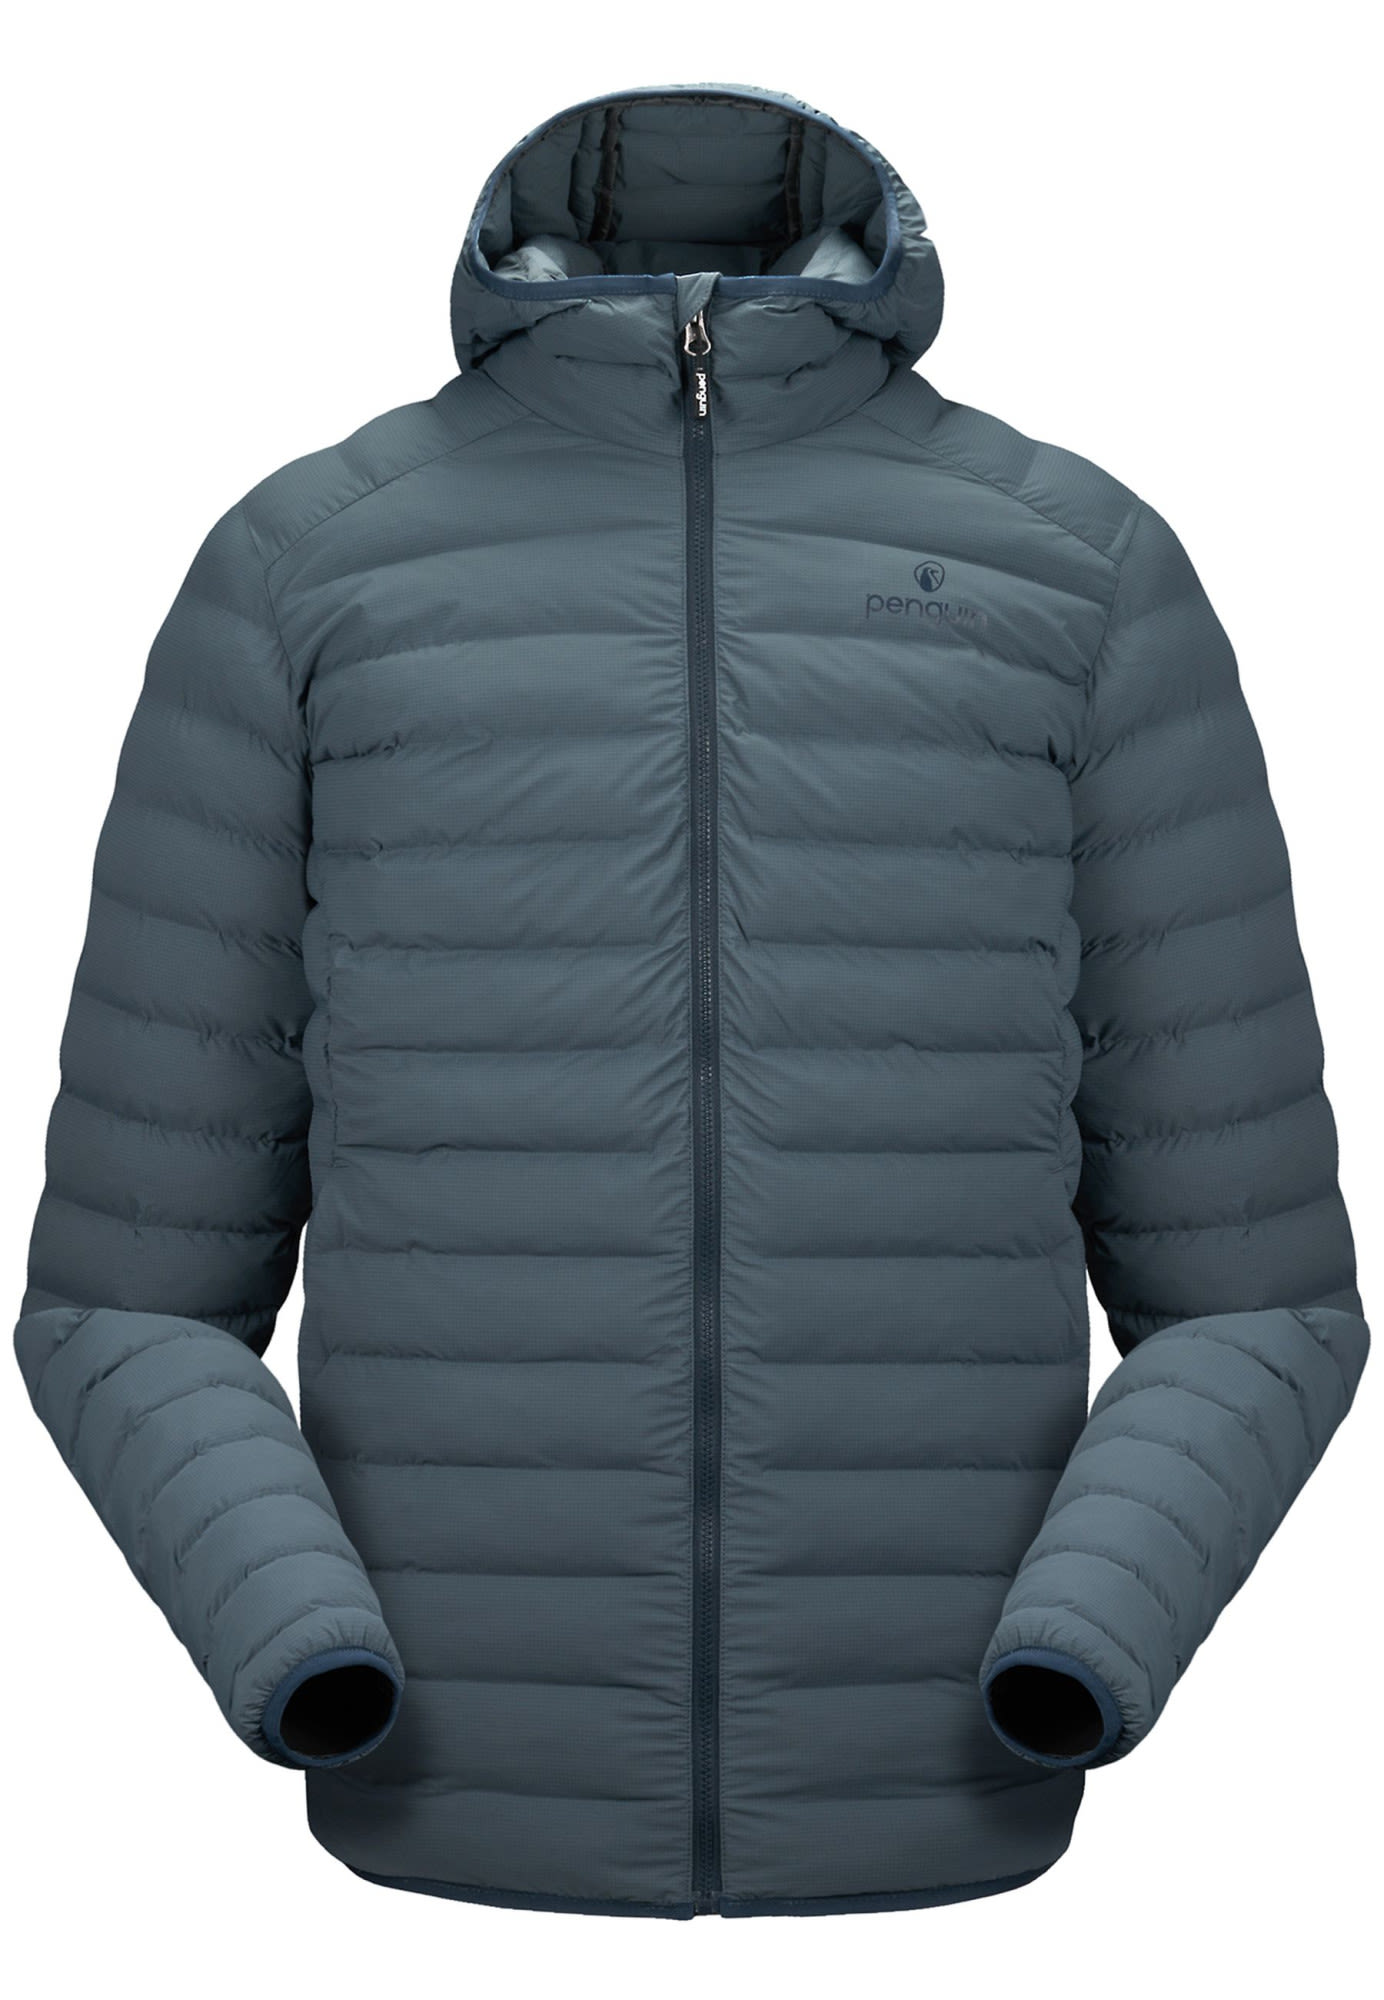 Penguin M Fiberball Insulation Jacket Blau | Herren Ski- & Snowboardjacke